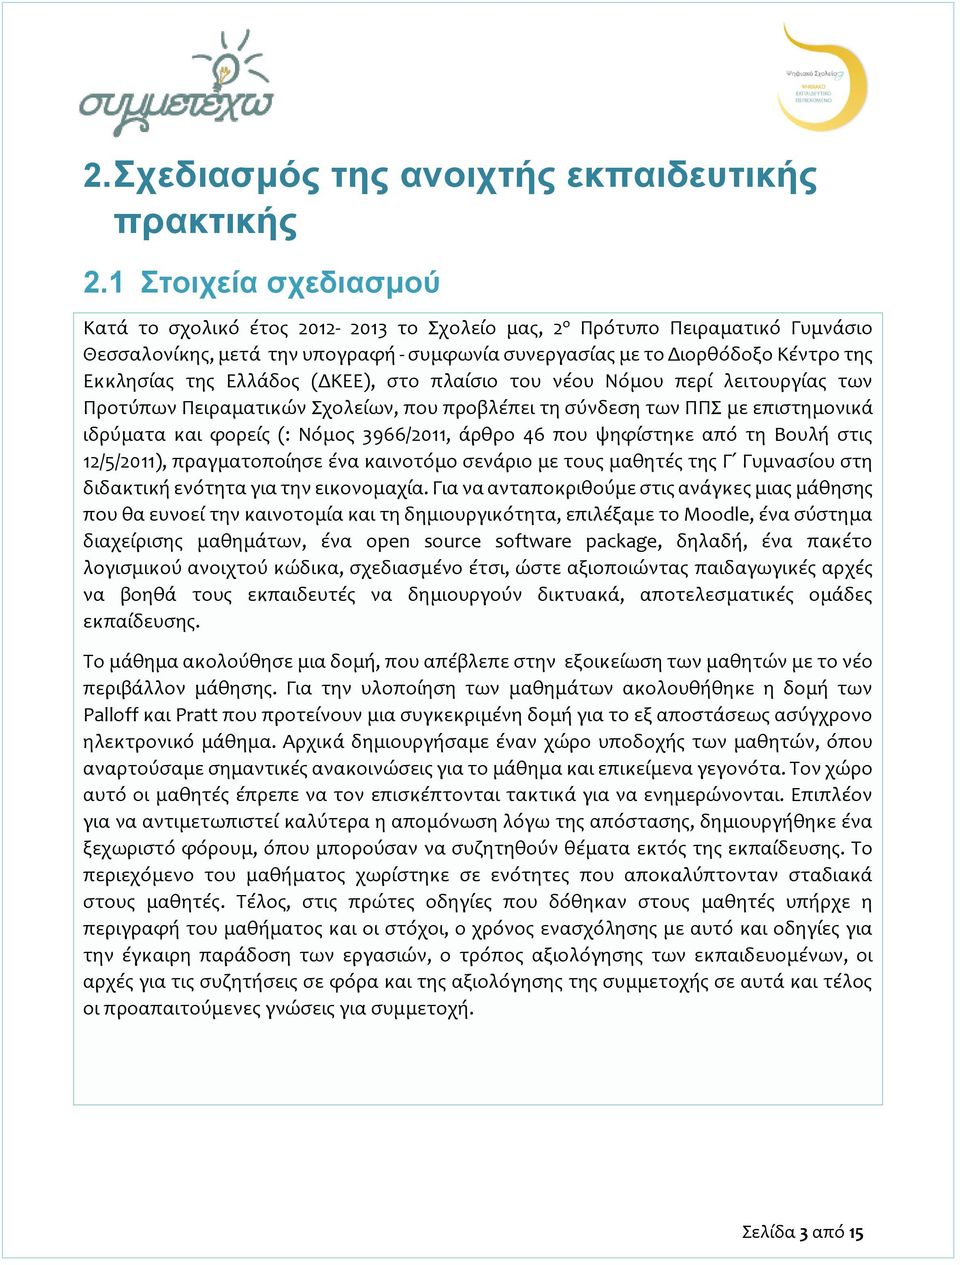 Ελλάδος (ΔΚΕΕ), στο πλαίσιο του νέου Νόμου περί λειτουργίας των Προτύπων Πειραματικών Σχολείων, που προβλέπει τη σύνδεση των ΠΠΣ με επιστημονικά ιδρύματα και φορείς (: Νόμος 3966/2011, άρθρο 46 που